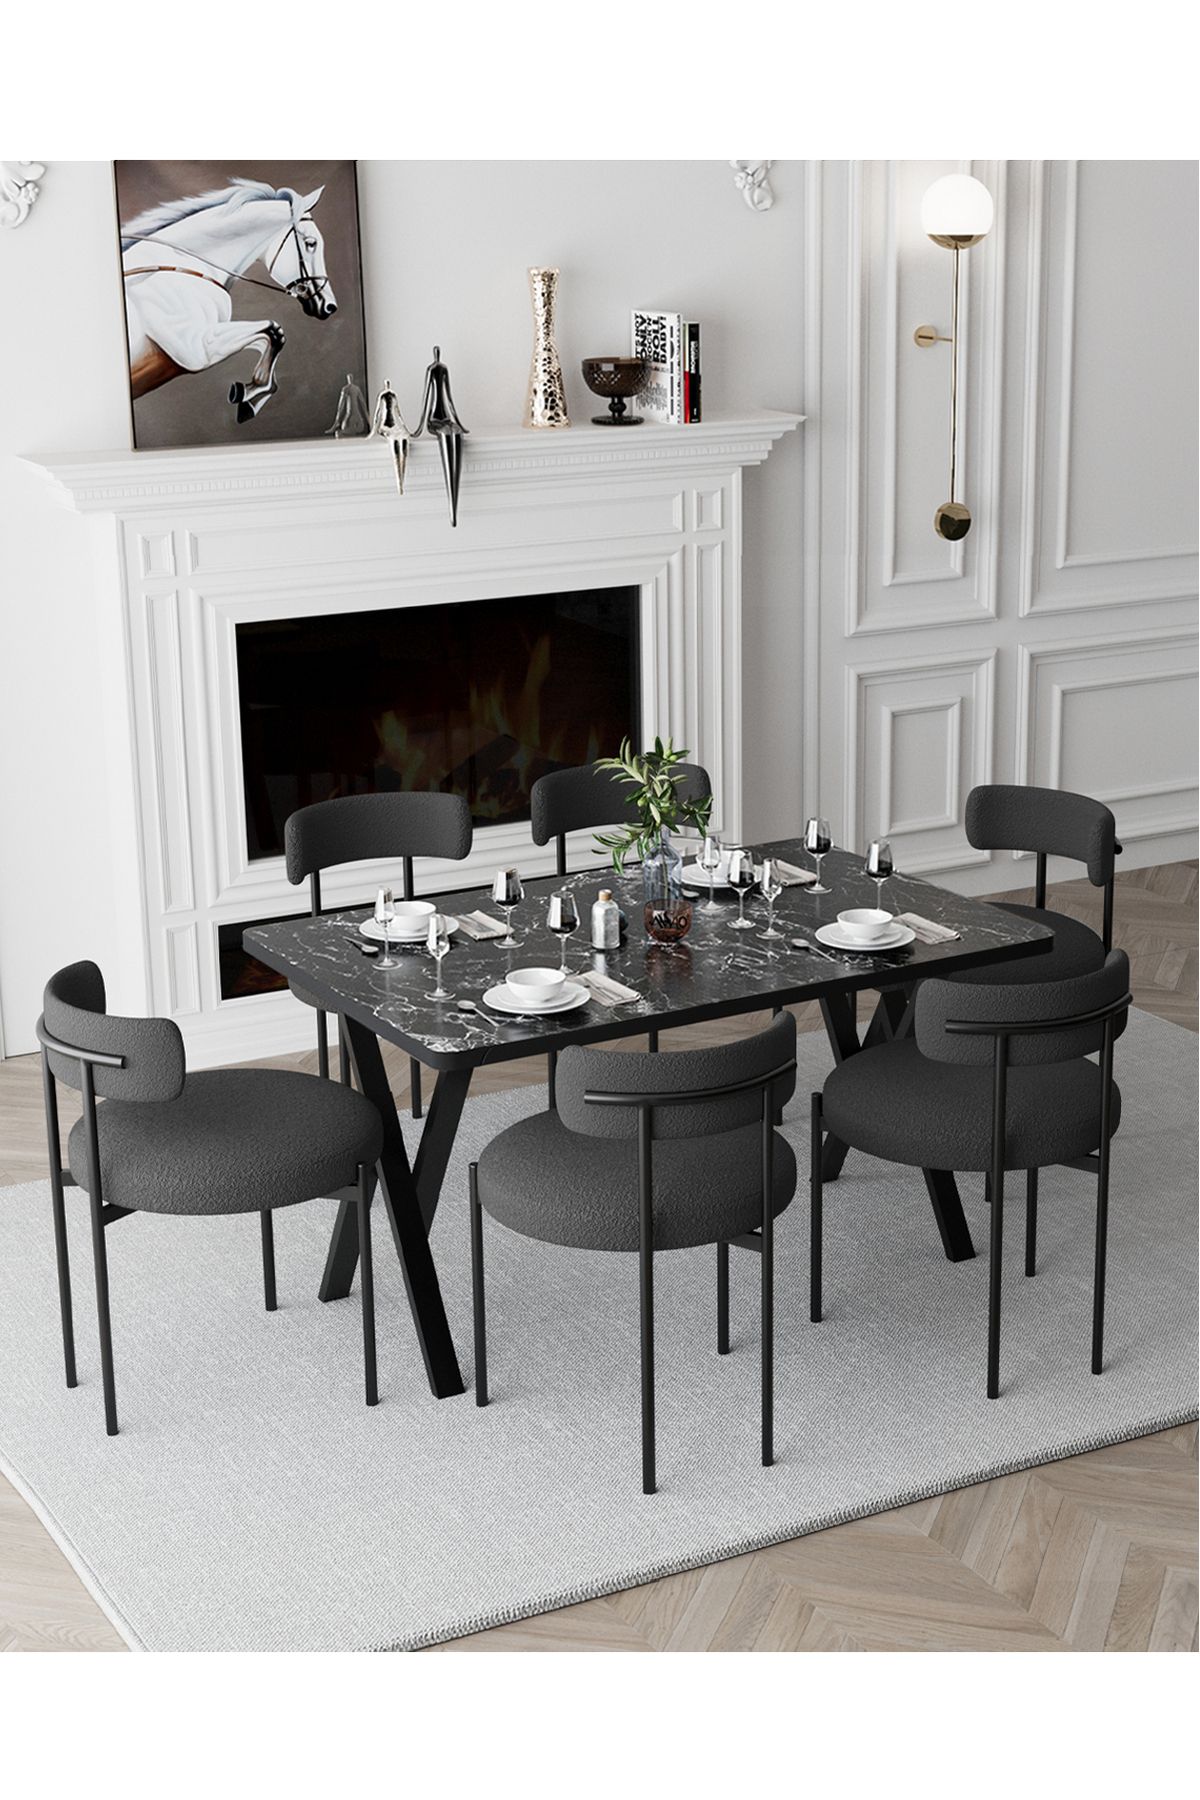 Avvio Margo   Teddy Sandalye 80x140 Yemek Masası Mutfak Masası 6 Kişilik Masa Sandalye Takımı